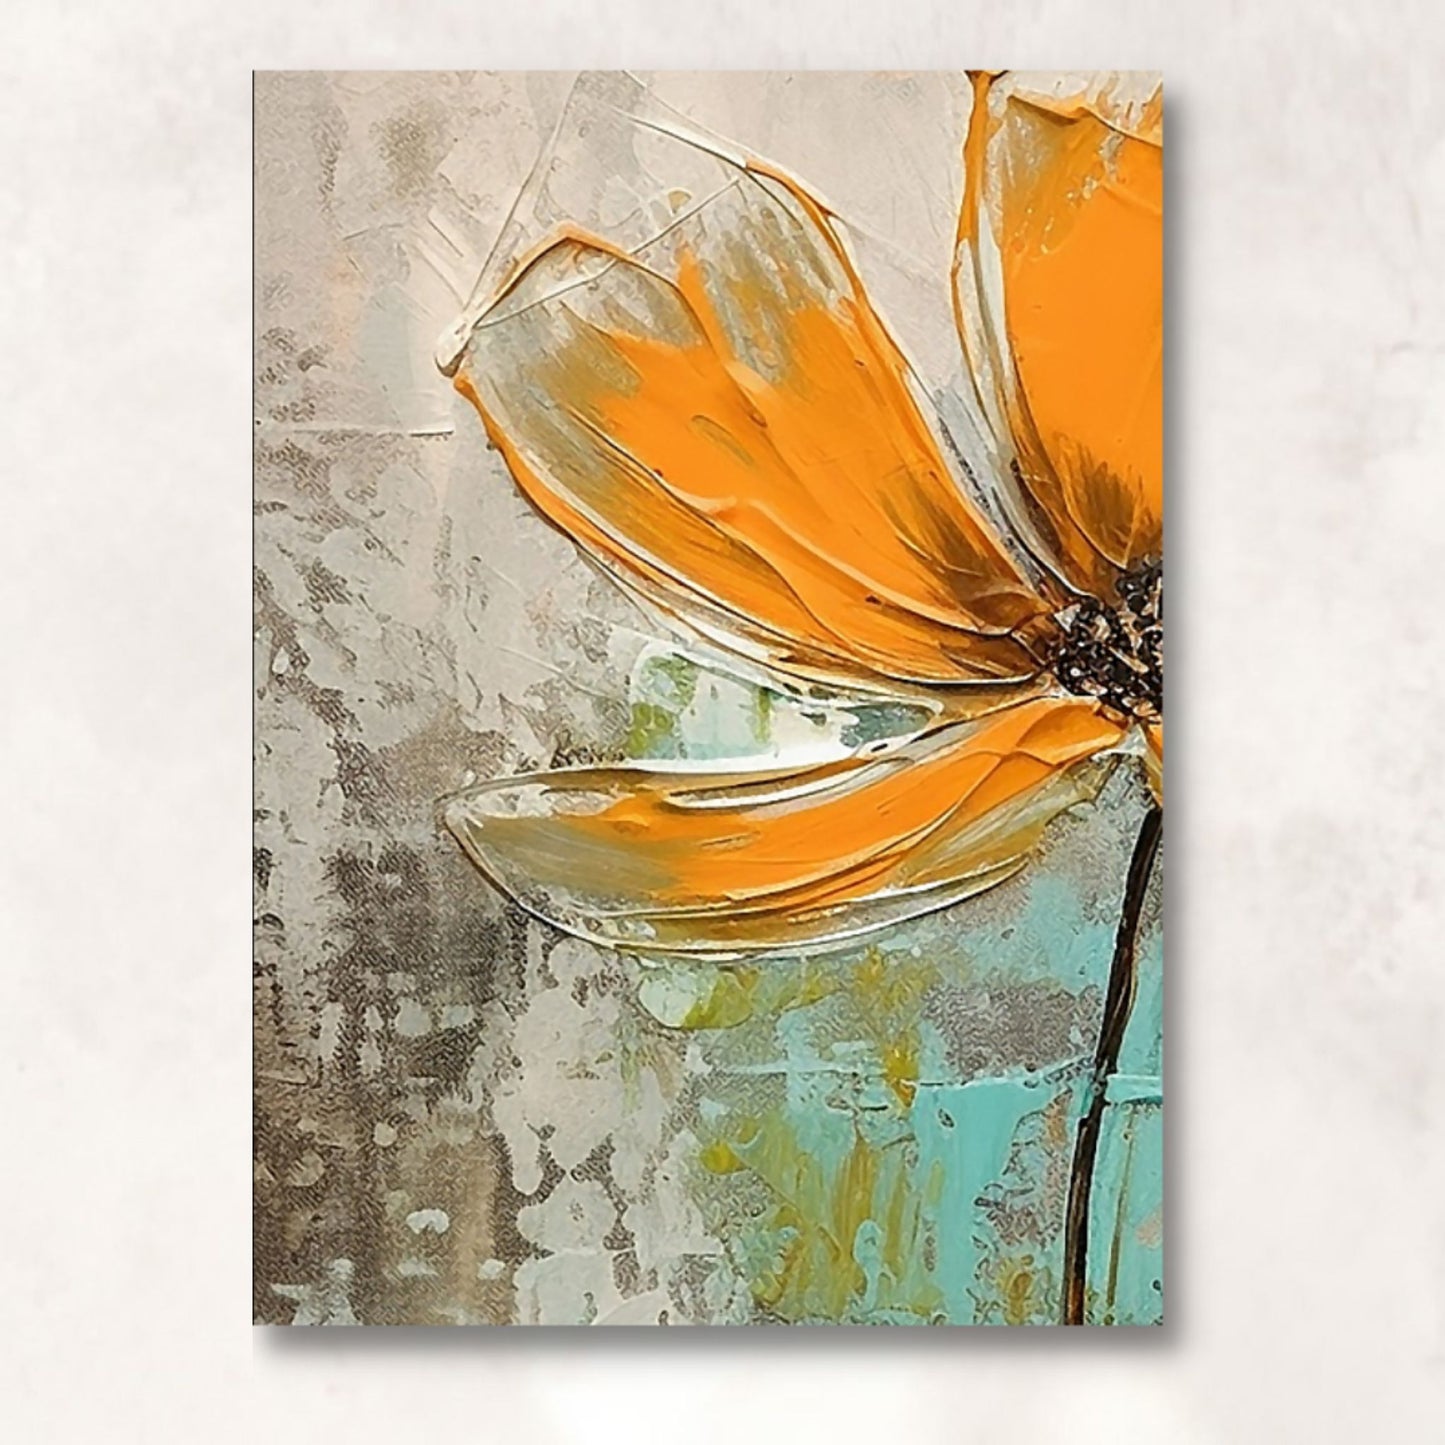 Motiv 1 av 3 stk. grafiske print på lerret. Motivet består av oransje blomster som danser på en beroligende bakgrunn av brunt,  beige og turkis. Illustrasjon av lerret på vegg.